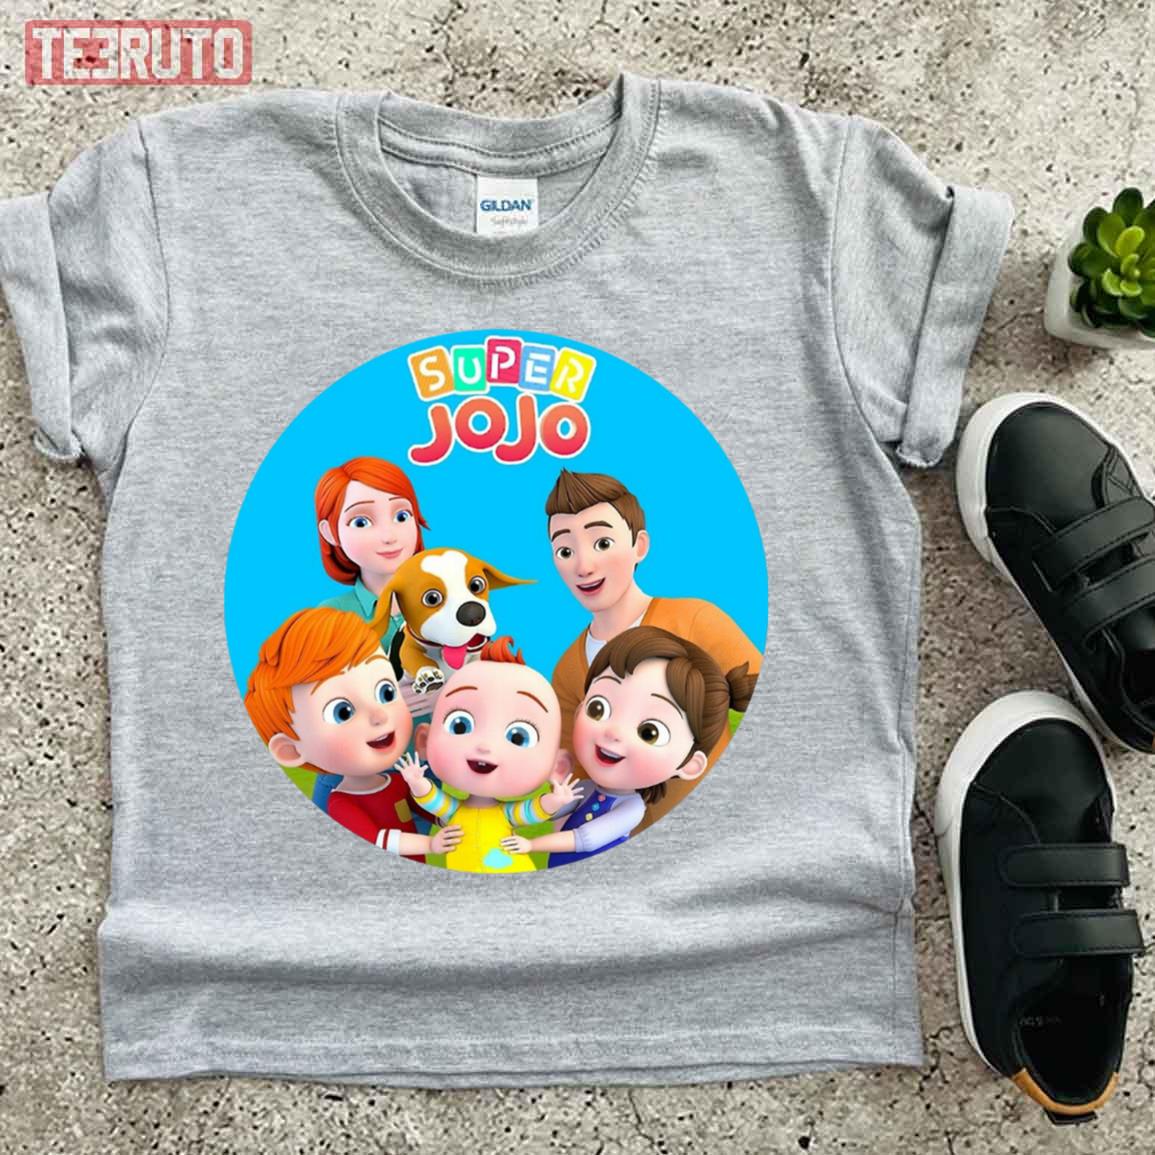 Super Jojo Nursery Rhymes Kids Songs Unisex T-Shirt